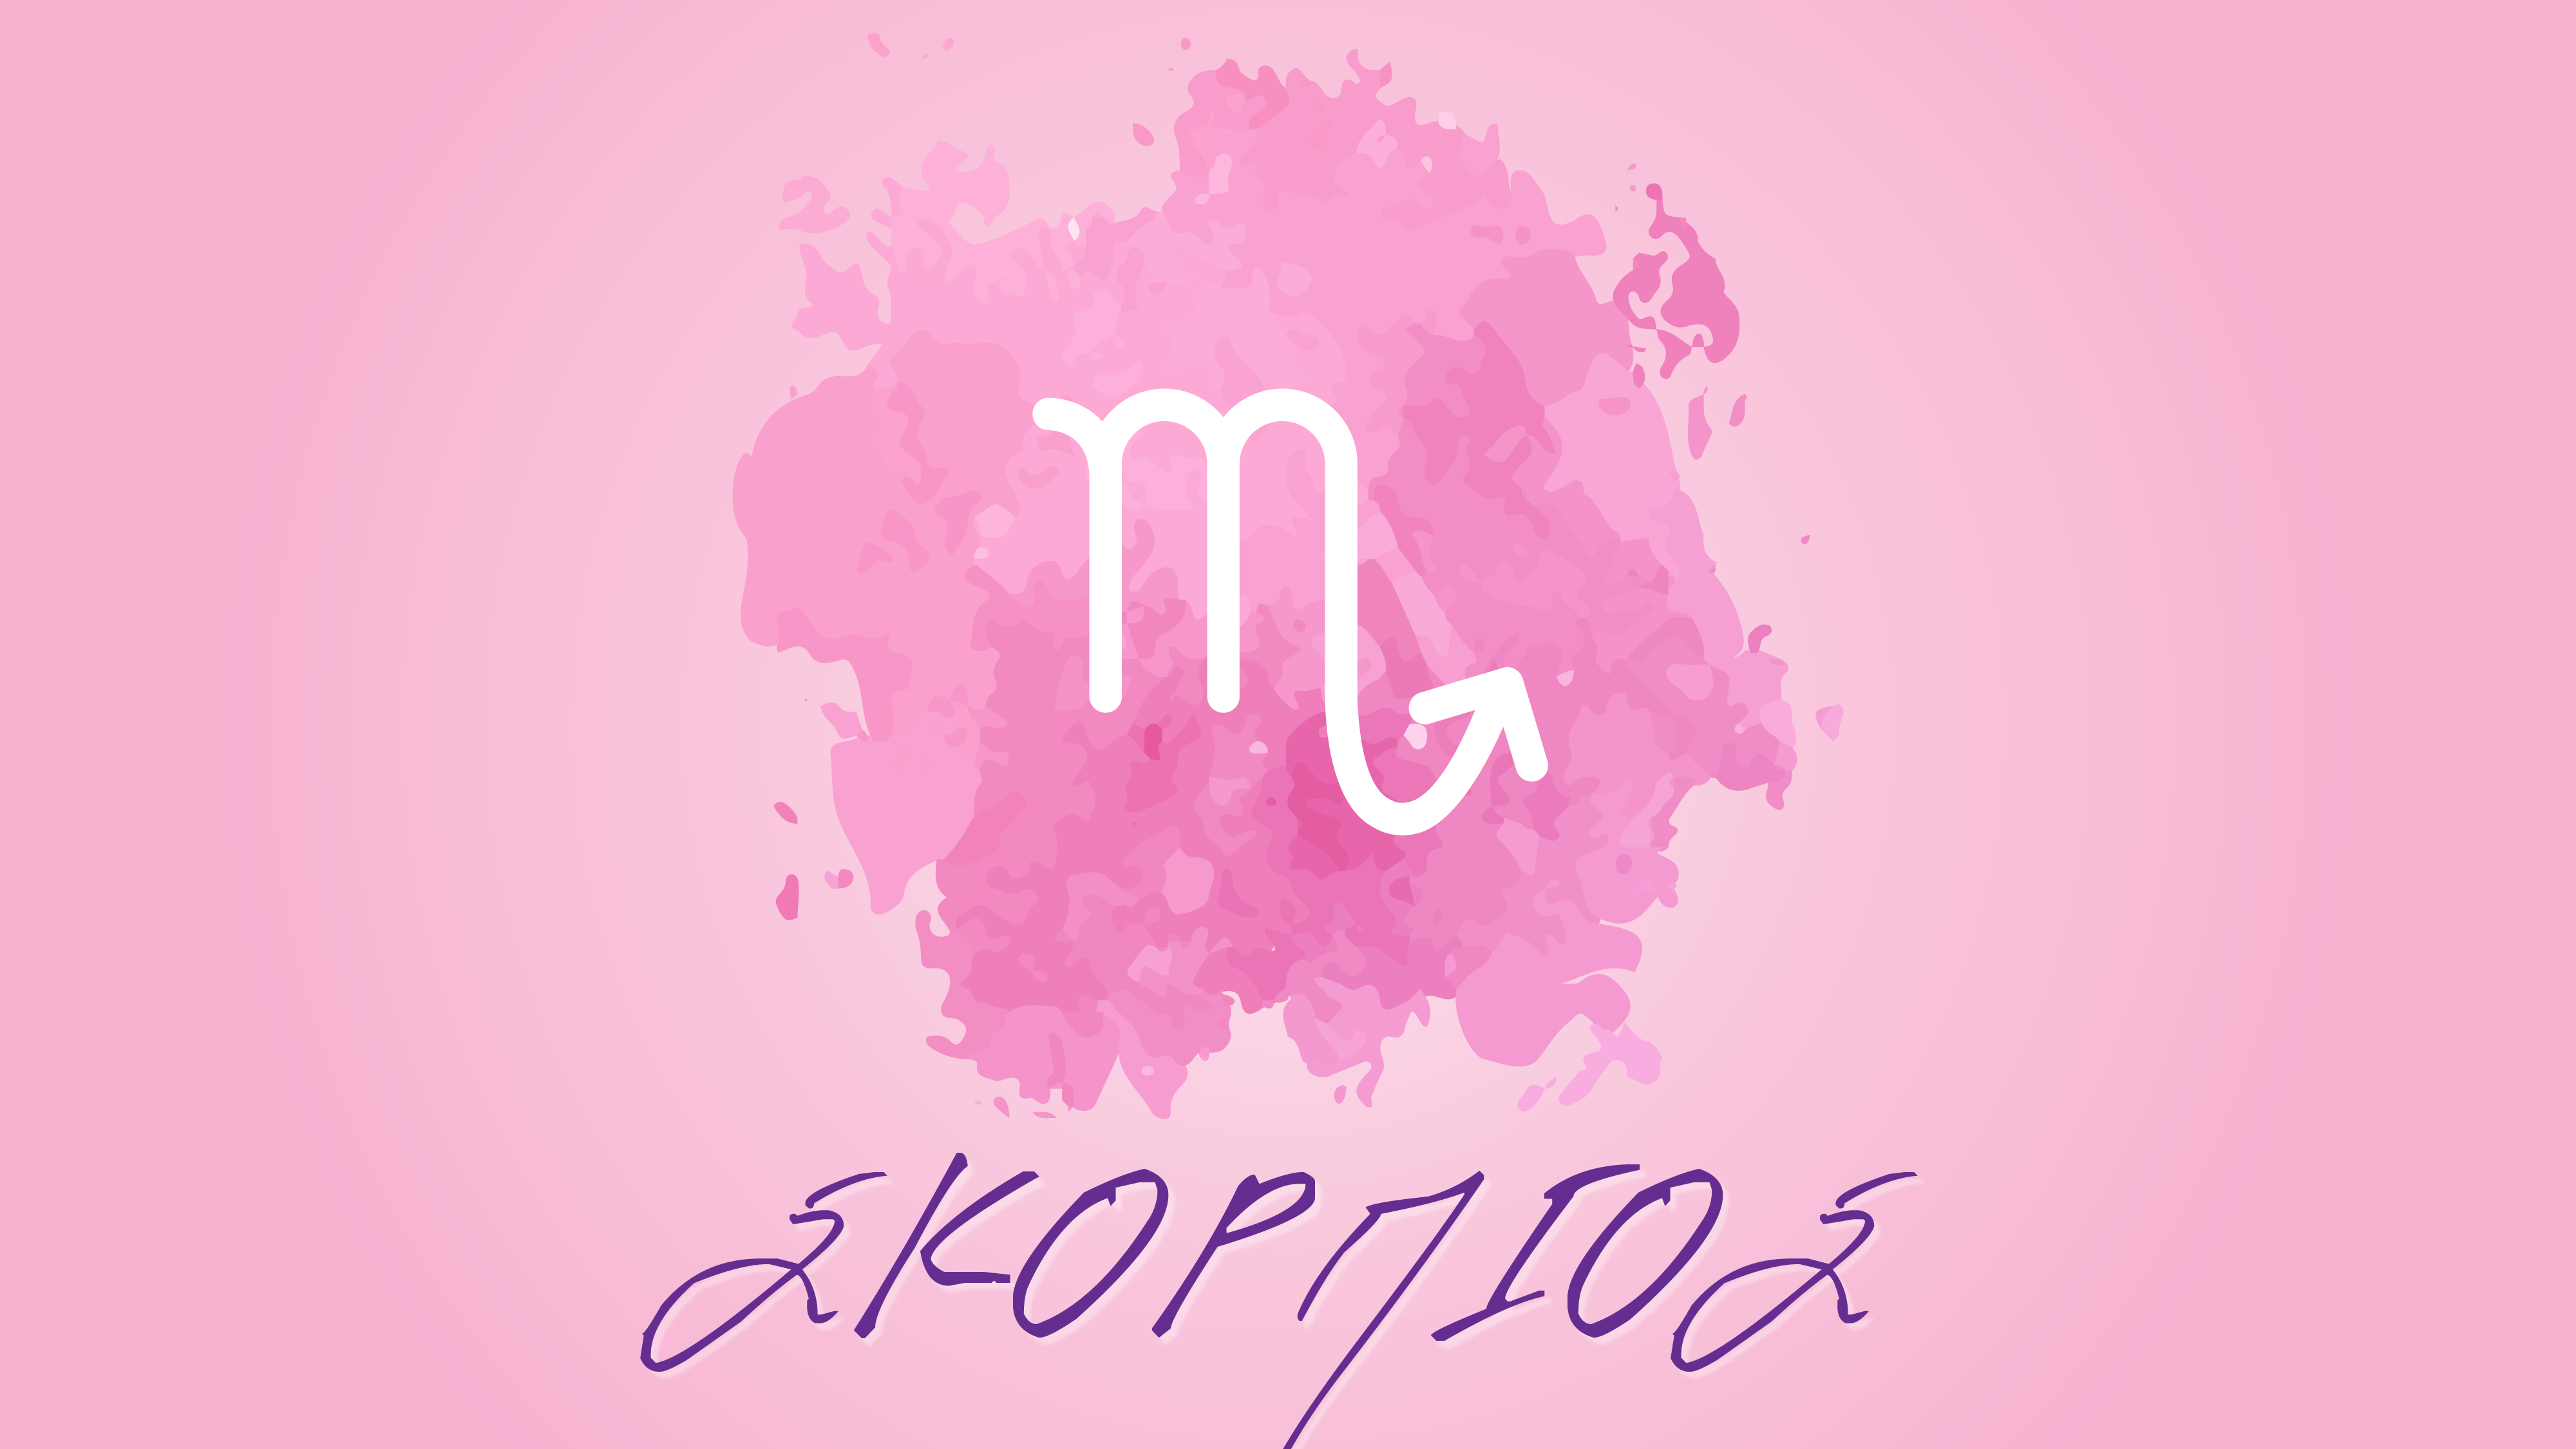 Σκορπιός – Μηνιαίες αστρολογικές προβλέψεις Οκτωβρίου 2021